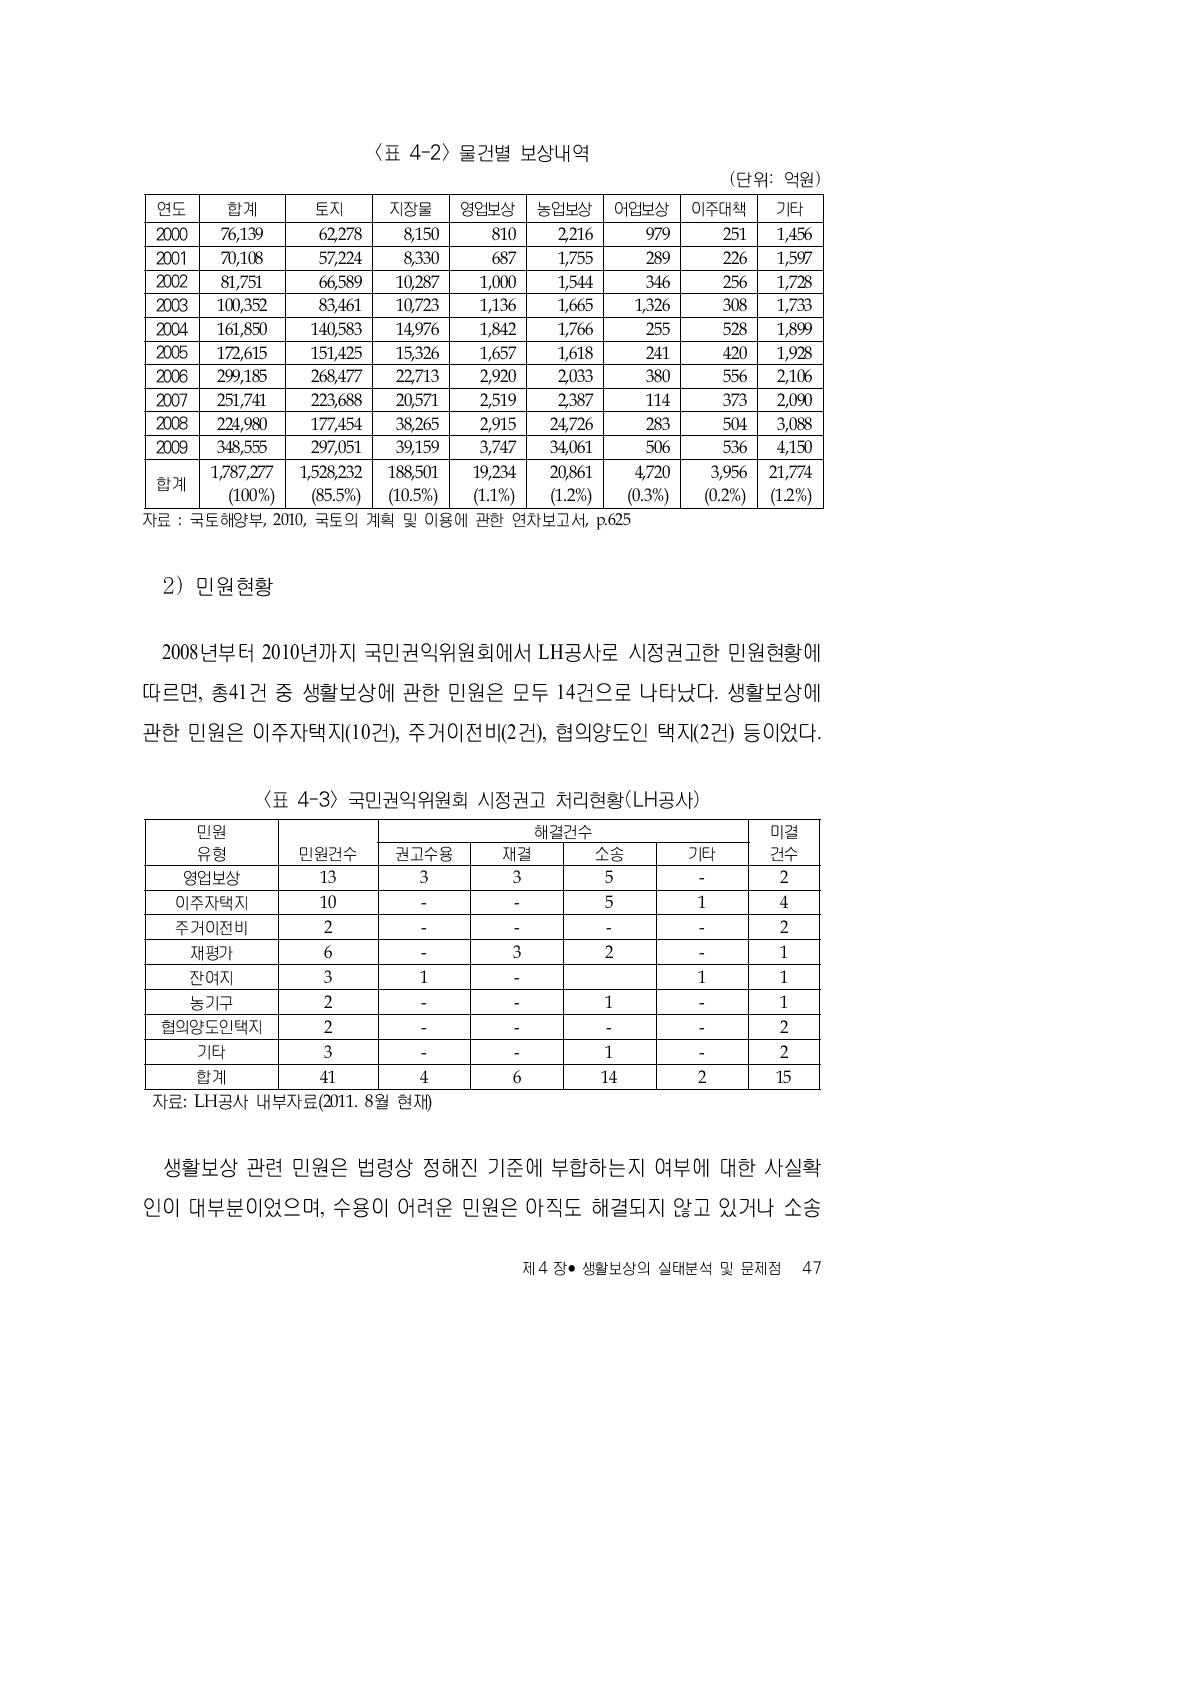 국민권익위원회 시정권고 처리현황(LH공사)